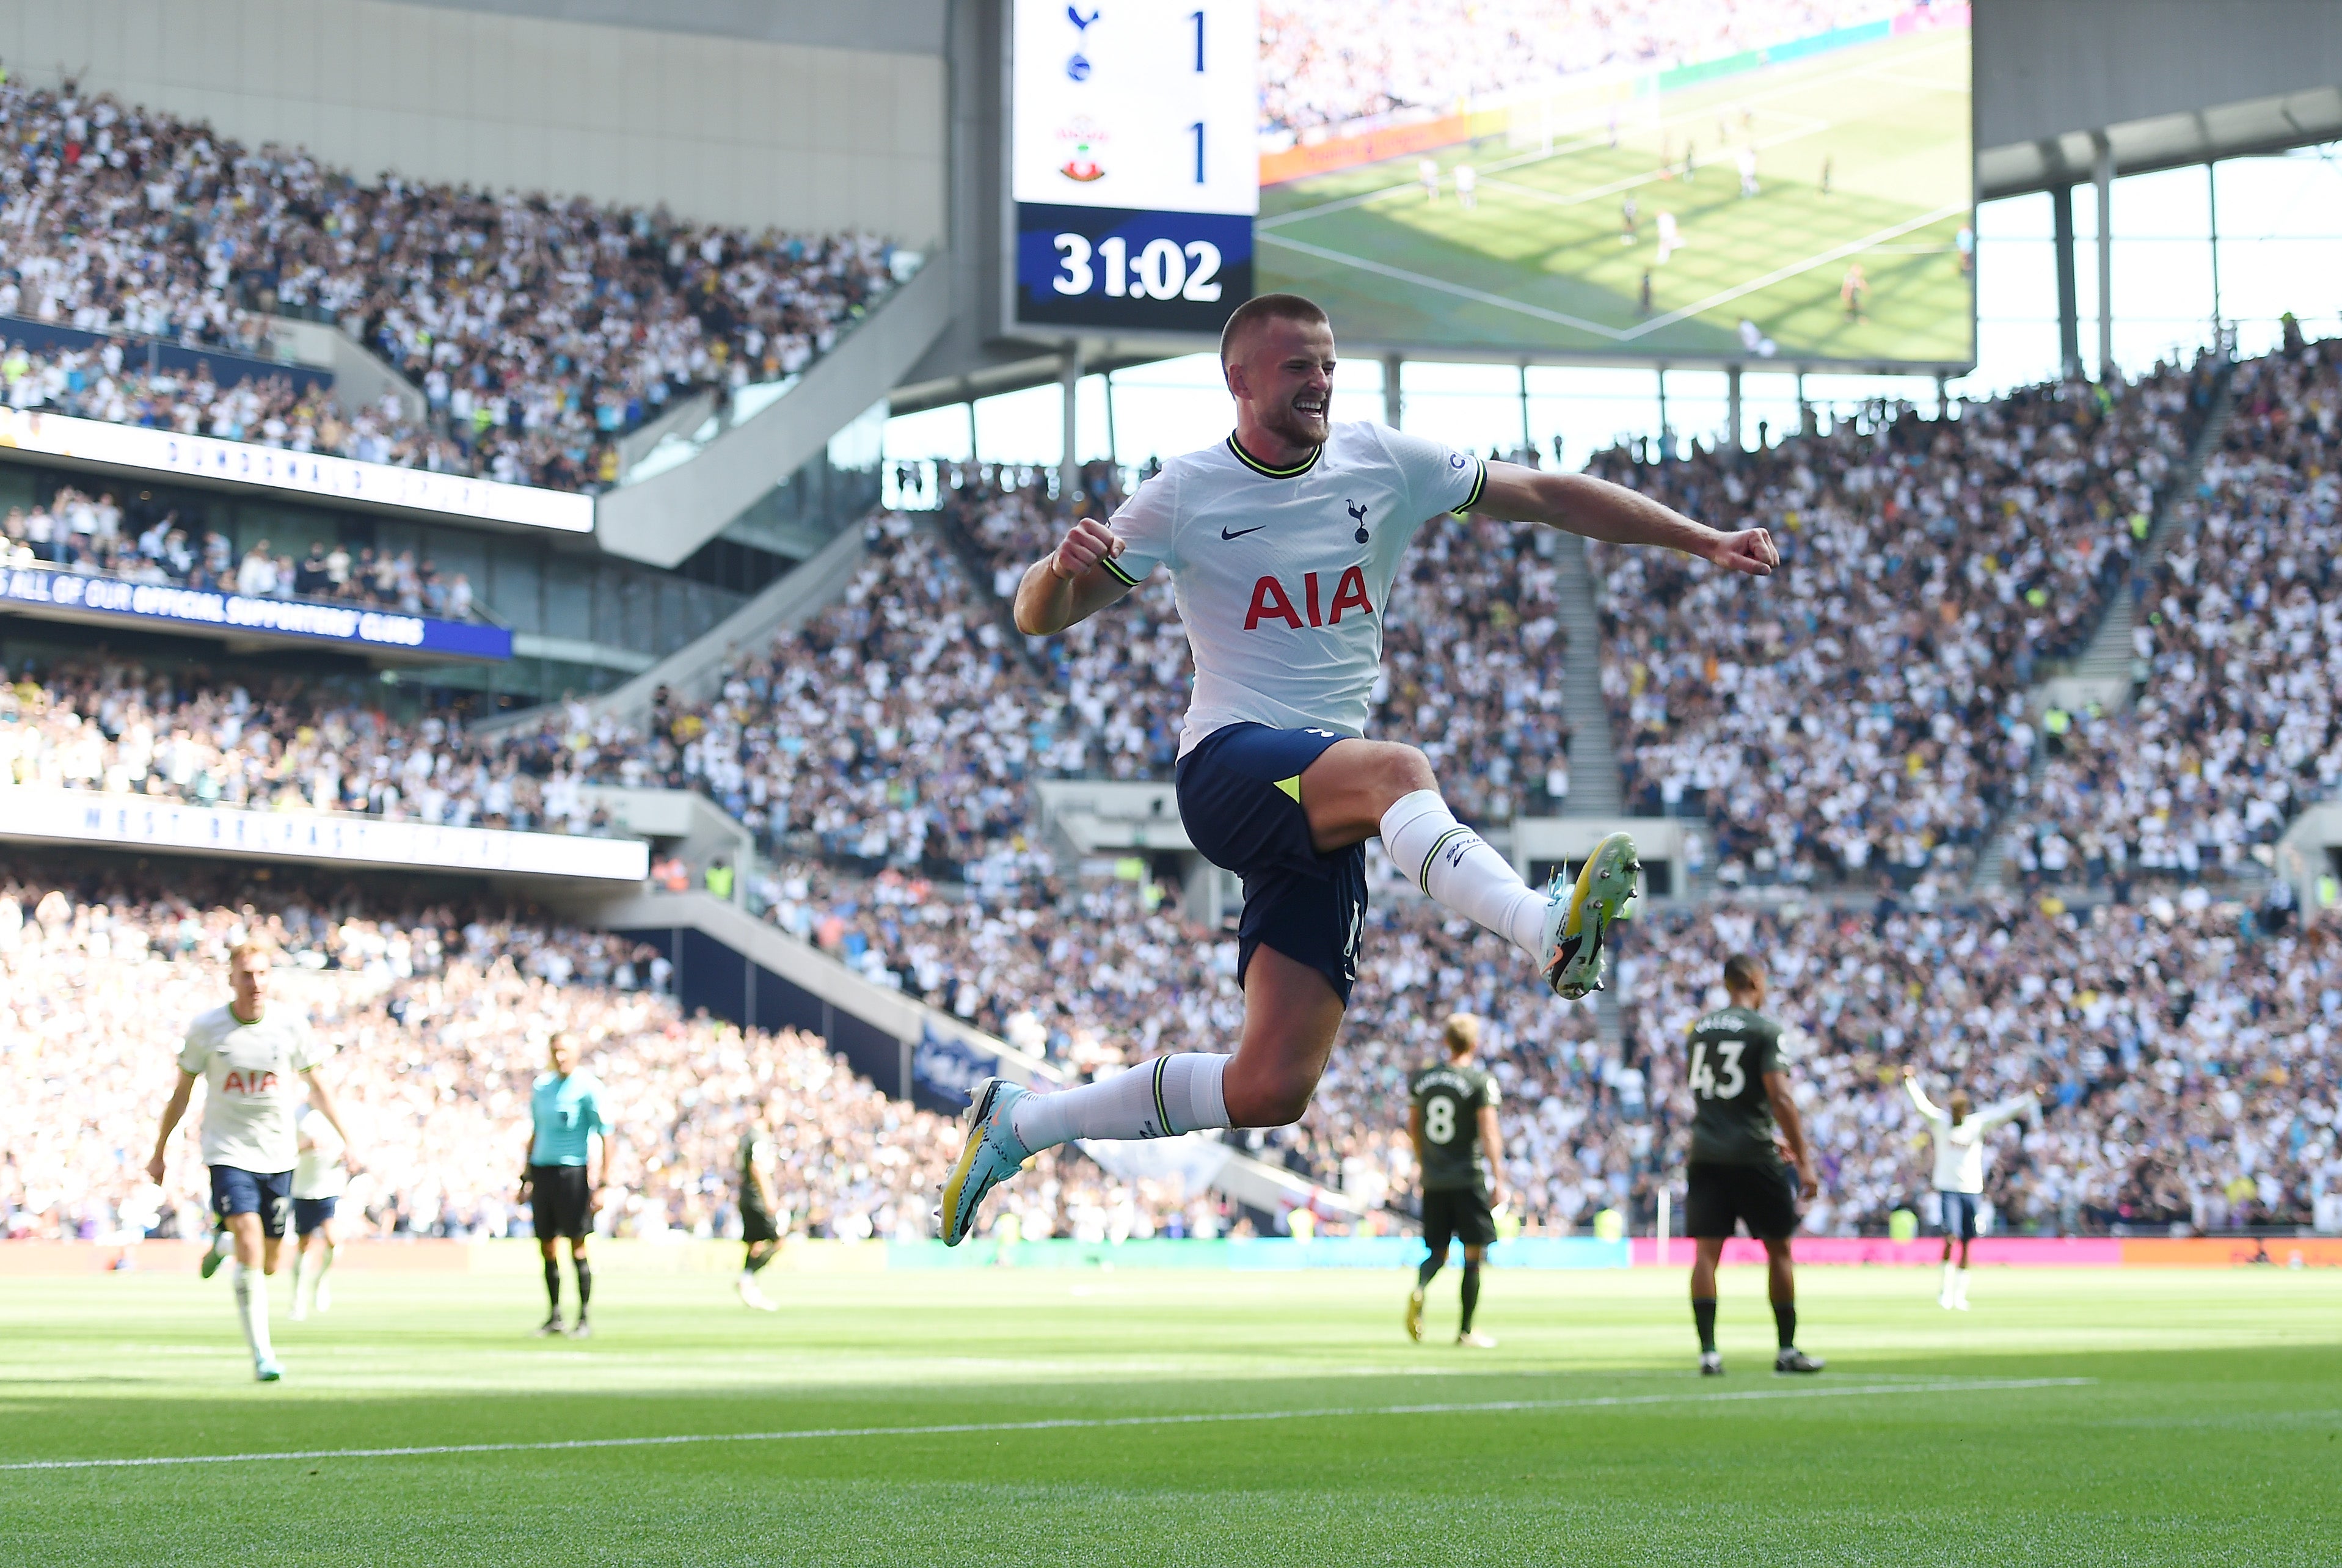 Dier scored Tottenham’s second goal